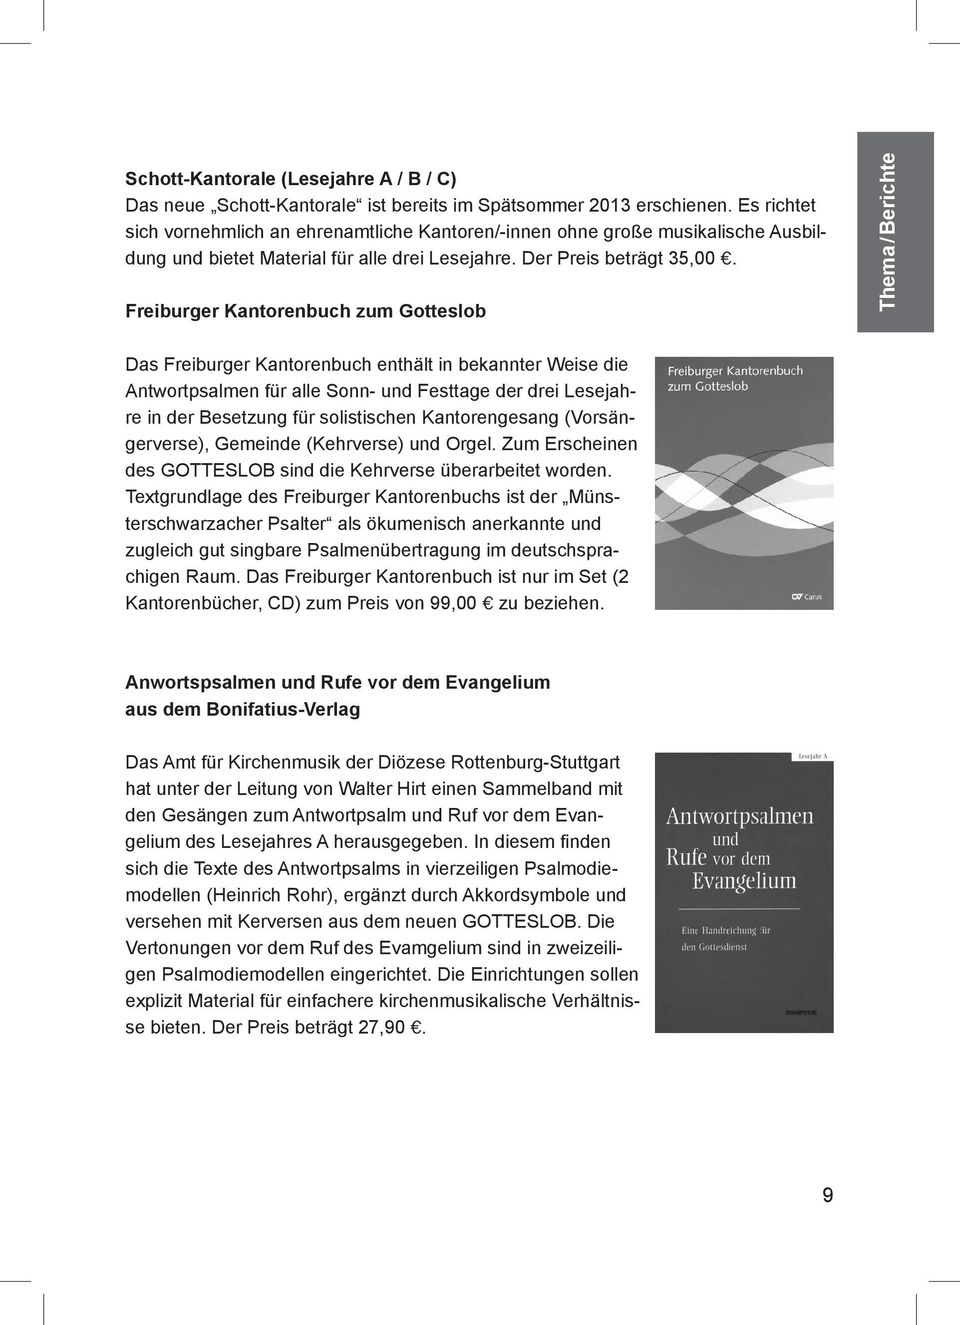 Freiburger Kantorenbuch zum Gotteslob Thema/ Berichte Das Freiburger Kantorenbuch enthält in bekannter Weise die Antwortpsalmen für alle Sonn- und Festtage der drei Lesejahre in der Besetzung für